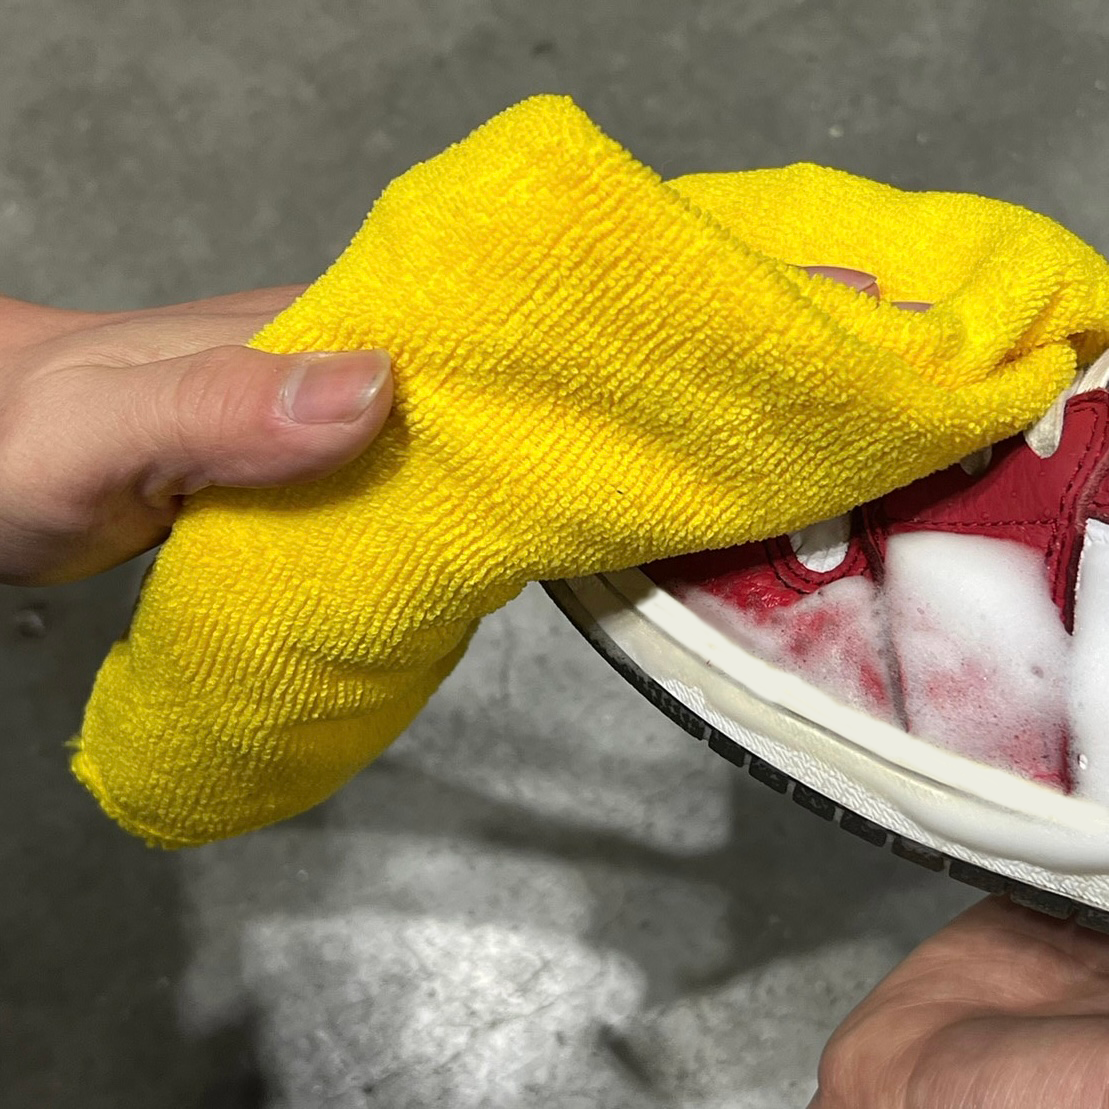 劇的靴洗浄剤 ジービーアールウォッシュ スニーカークリーナー 環境対策品 奇想天外摩訶不思議列伝シリーズ GBRWASH